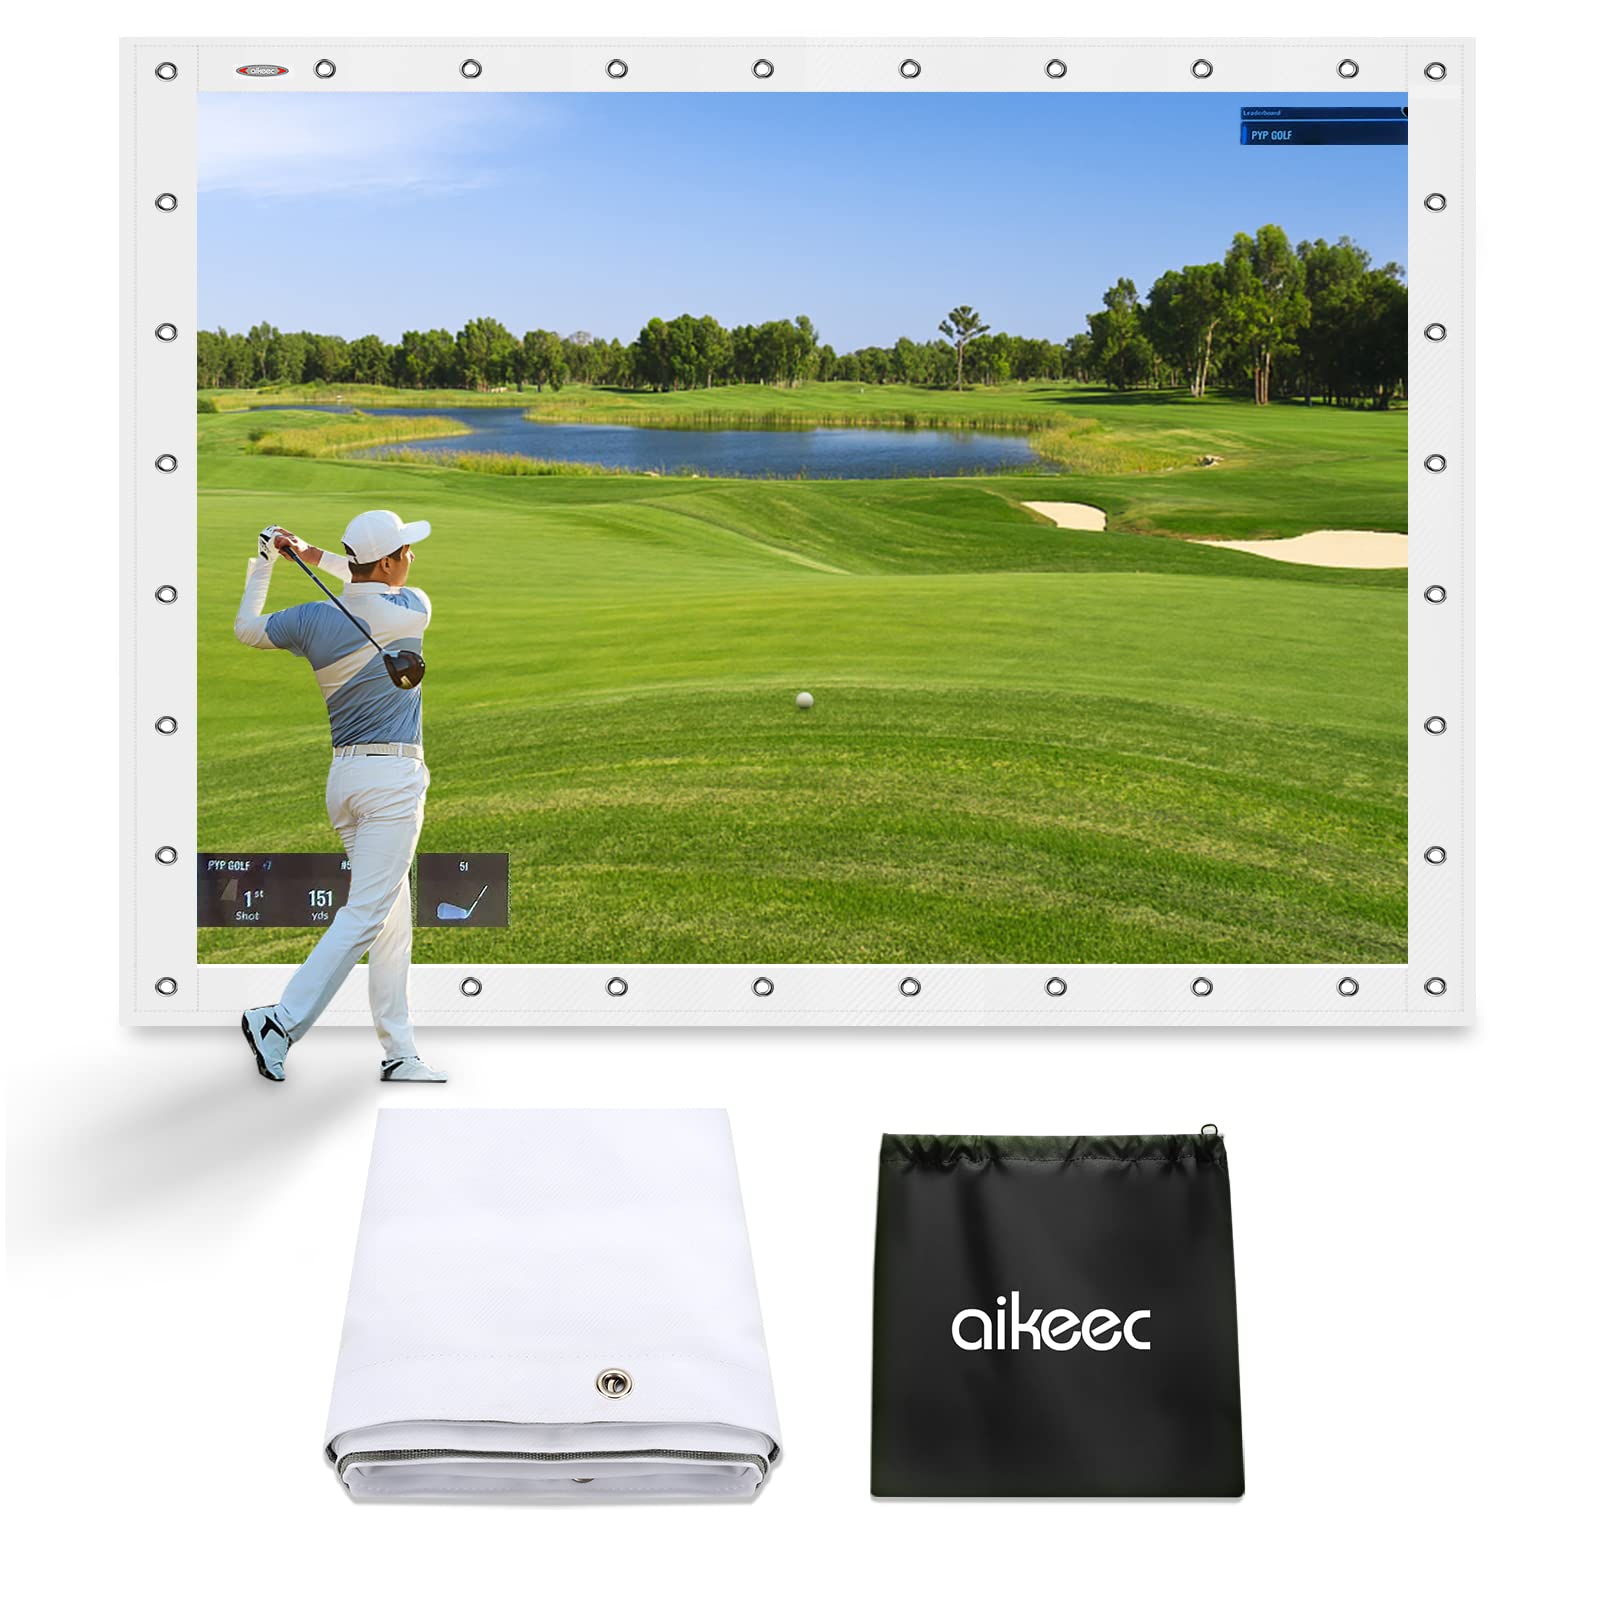 Aikeec Golf Simulator Impact Screen